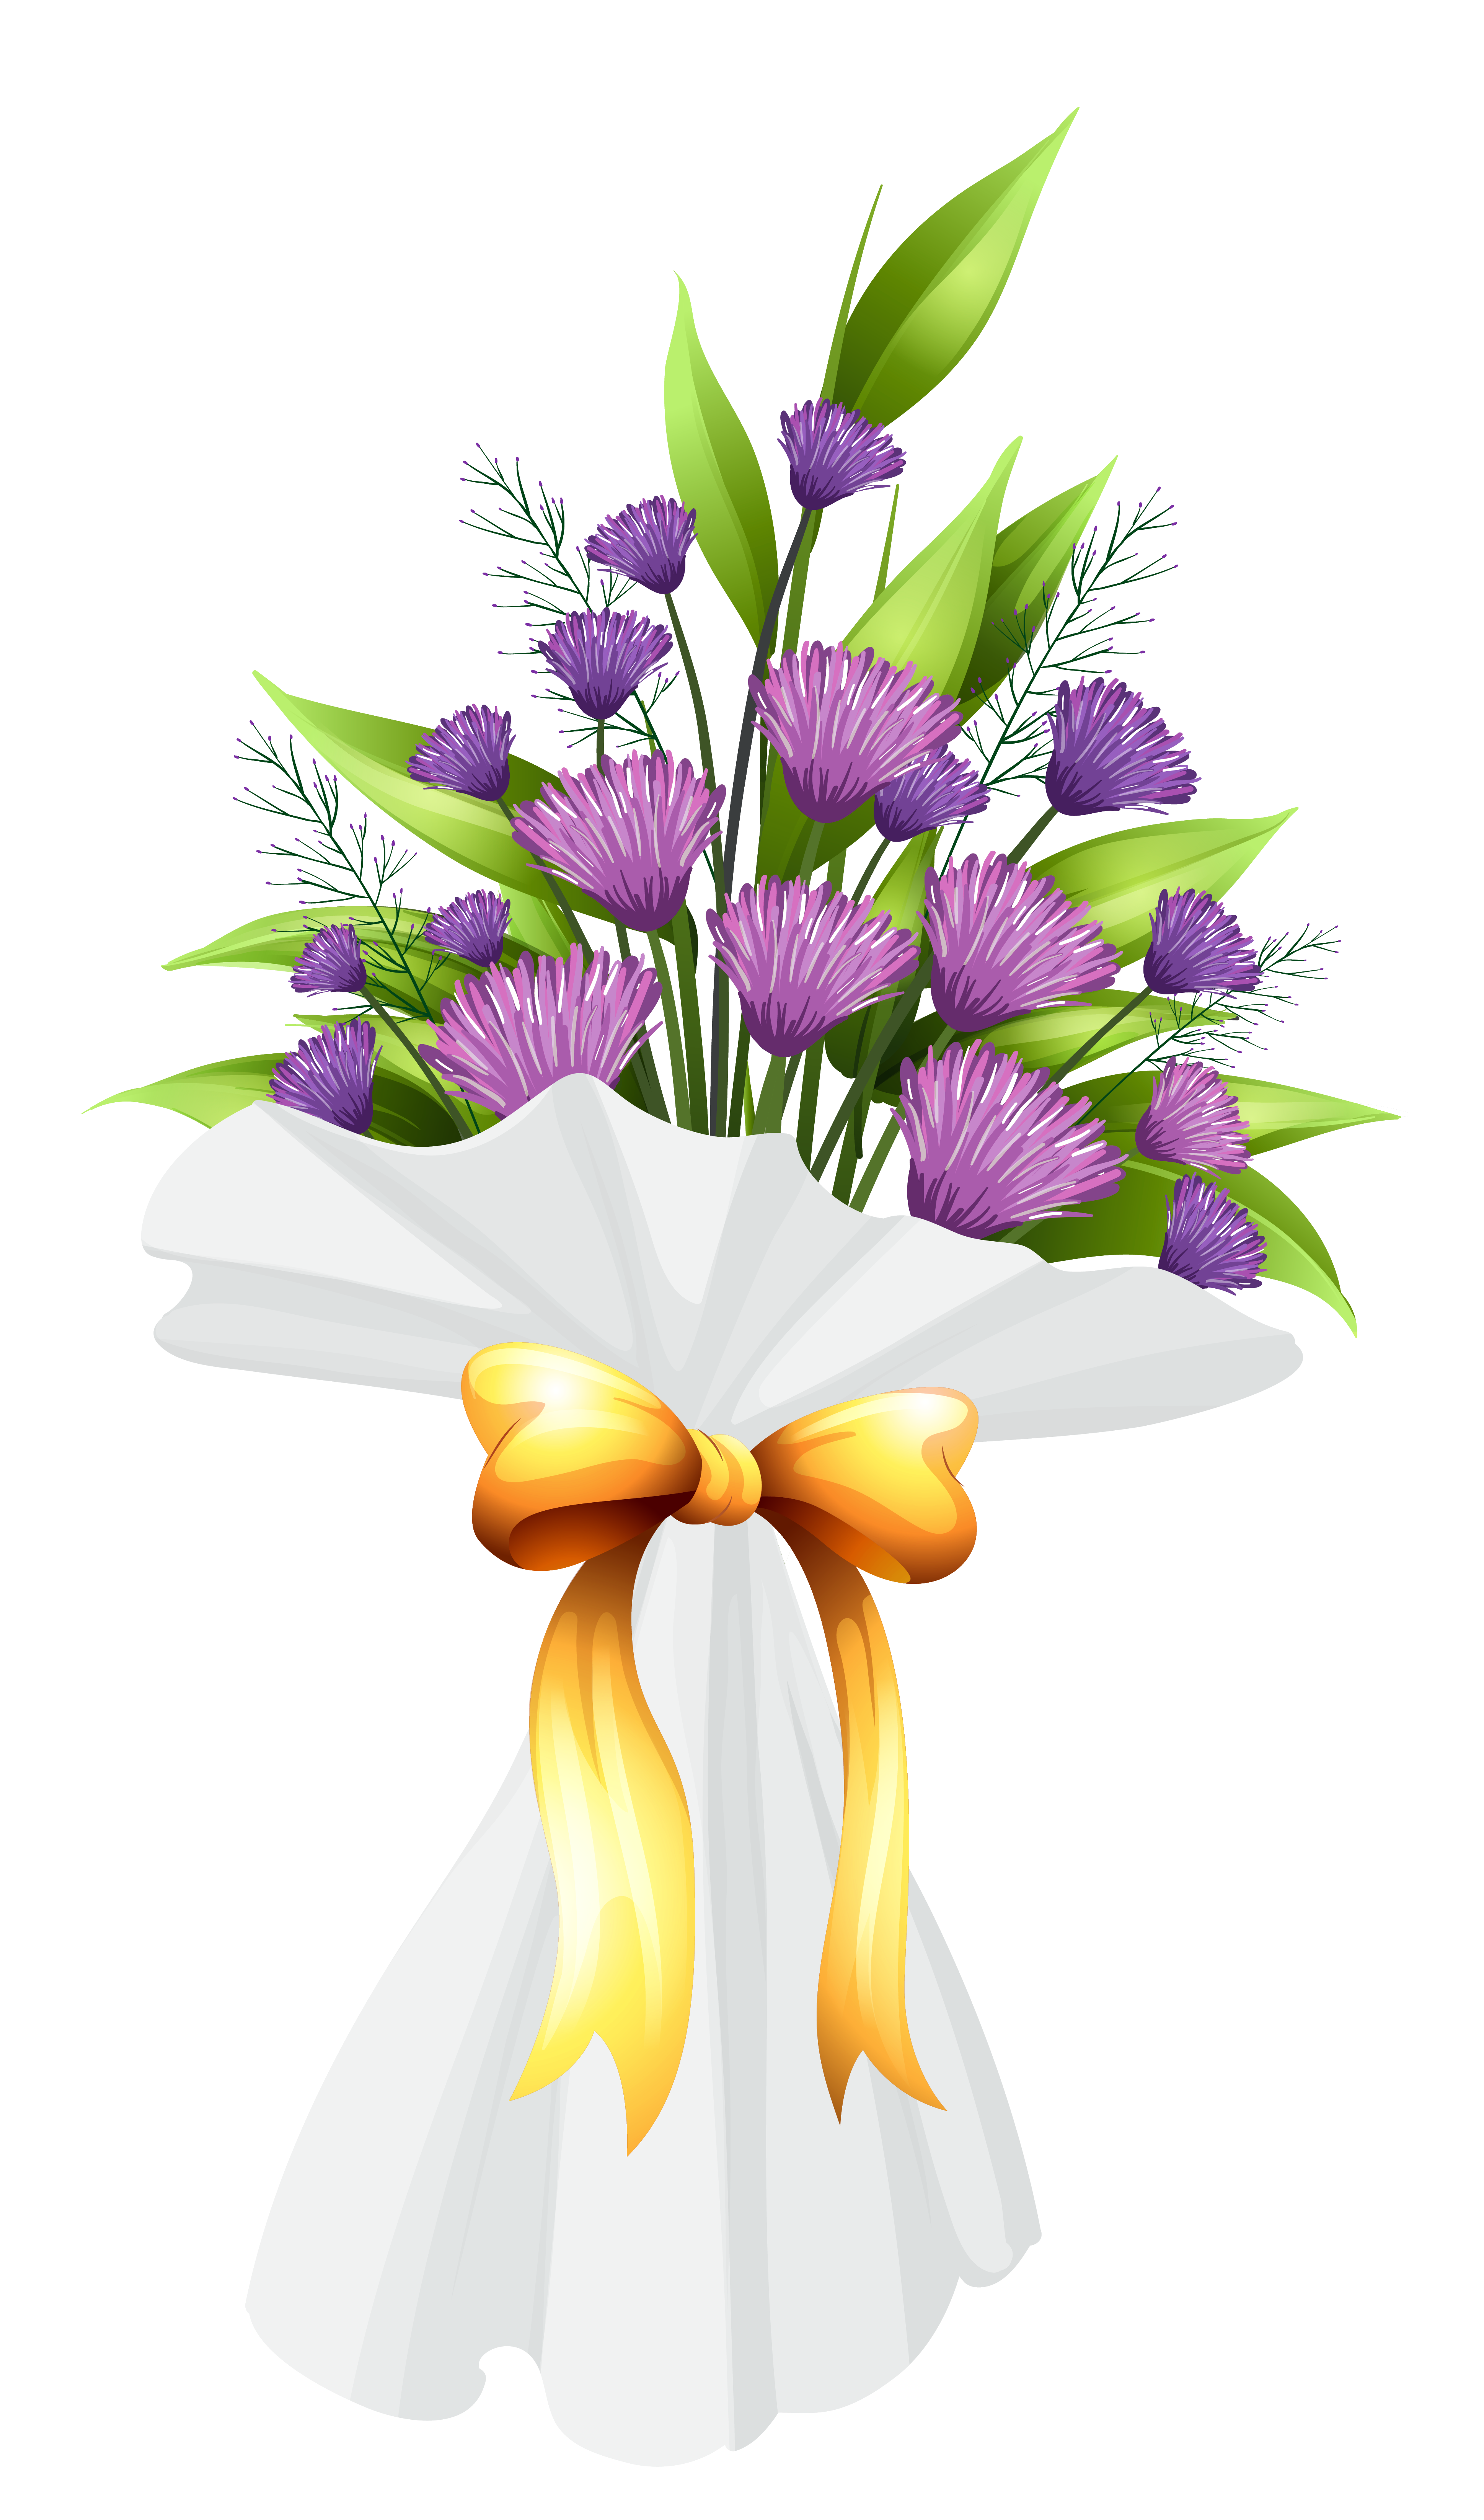 Purple flowers clipart image. Flower bouquet png